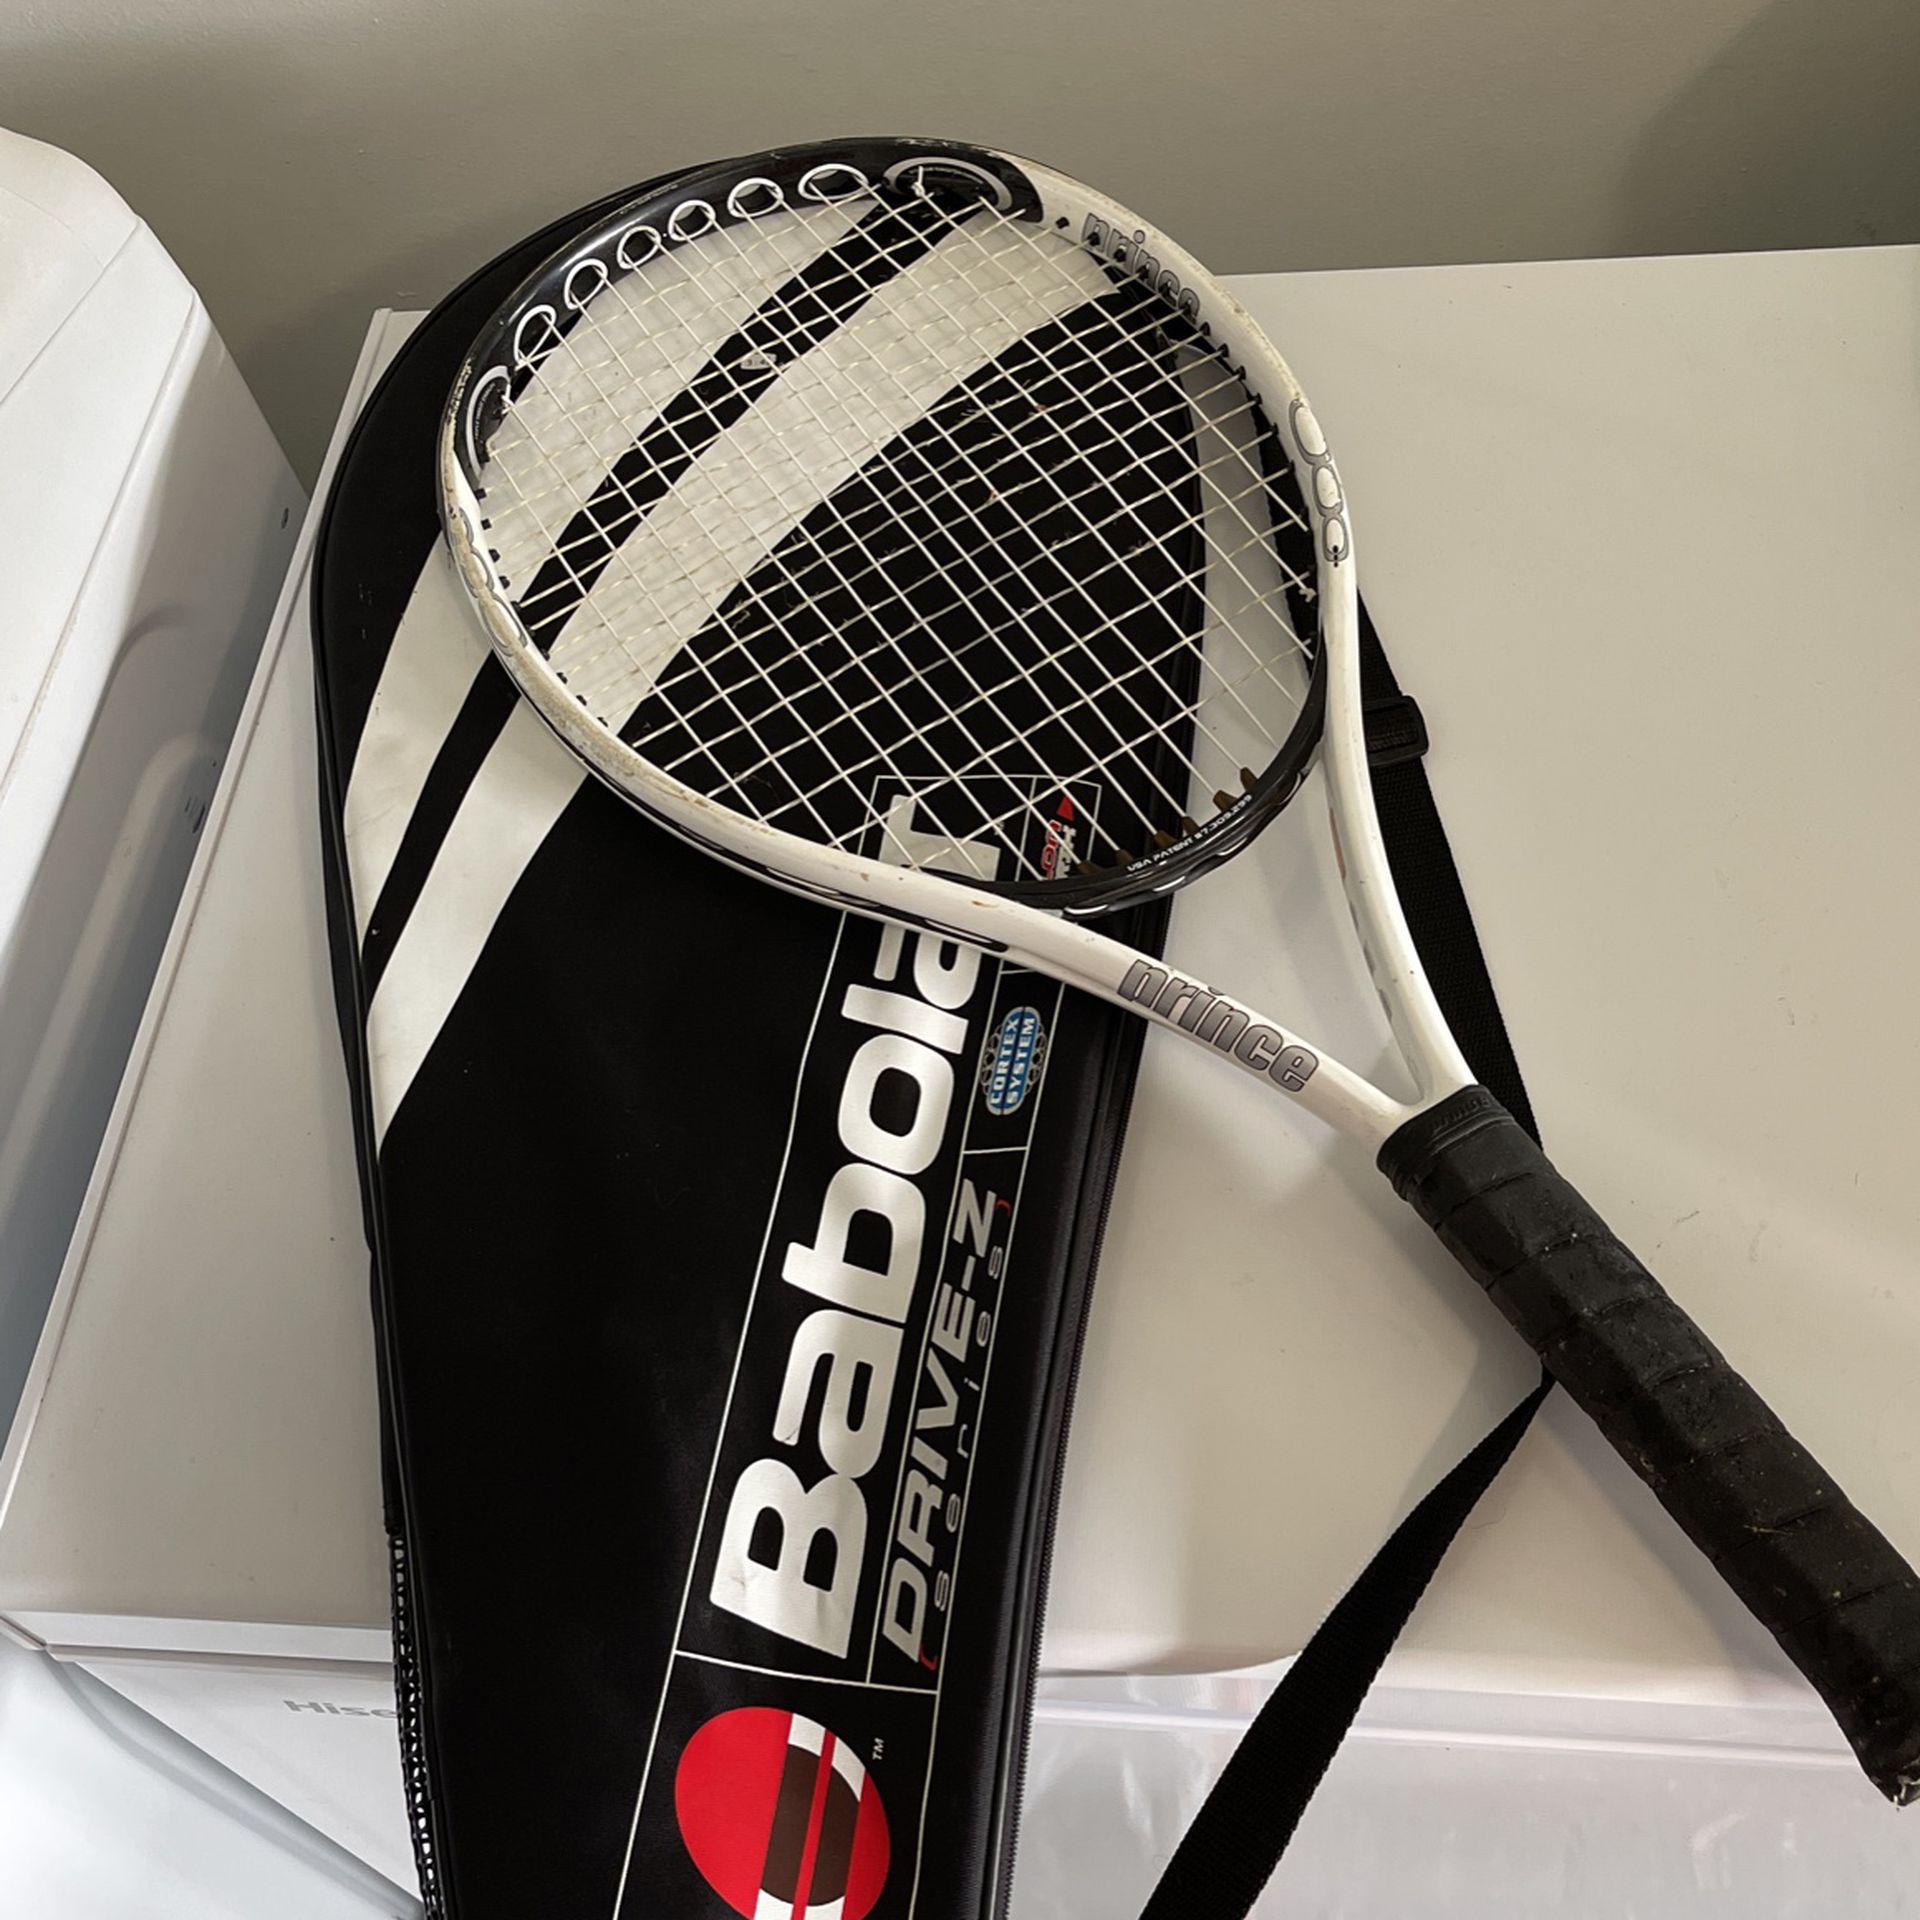 Prince O3 Hybrid Tennis Racket And Babolat Bag 